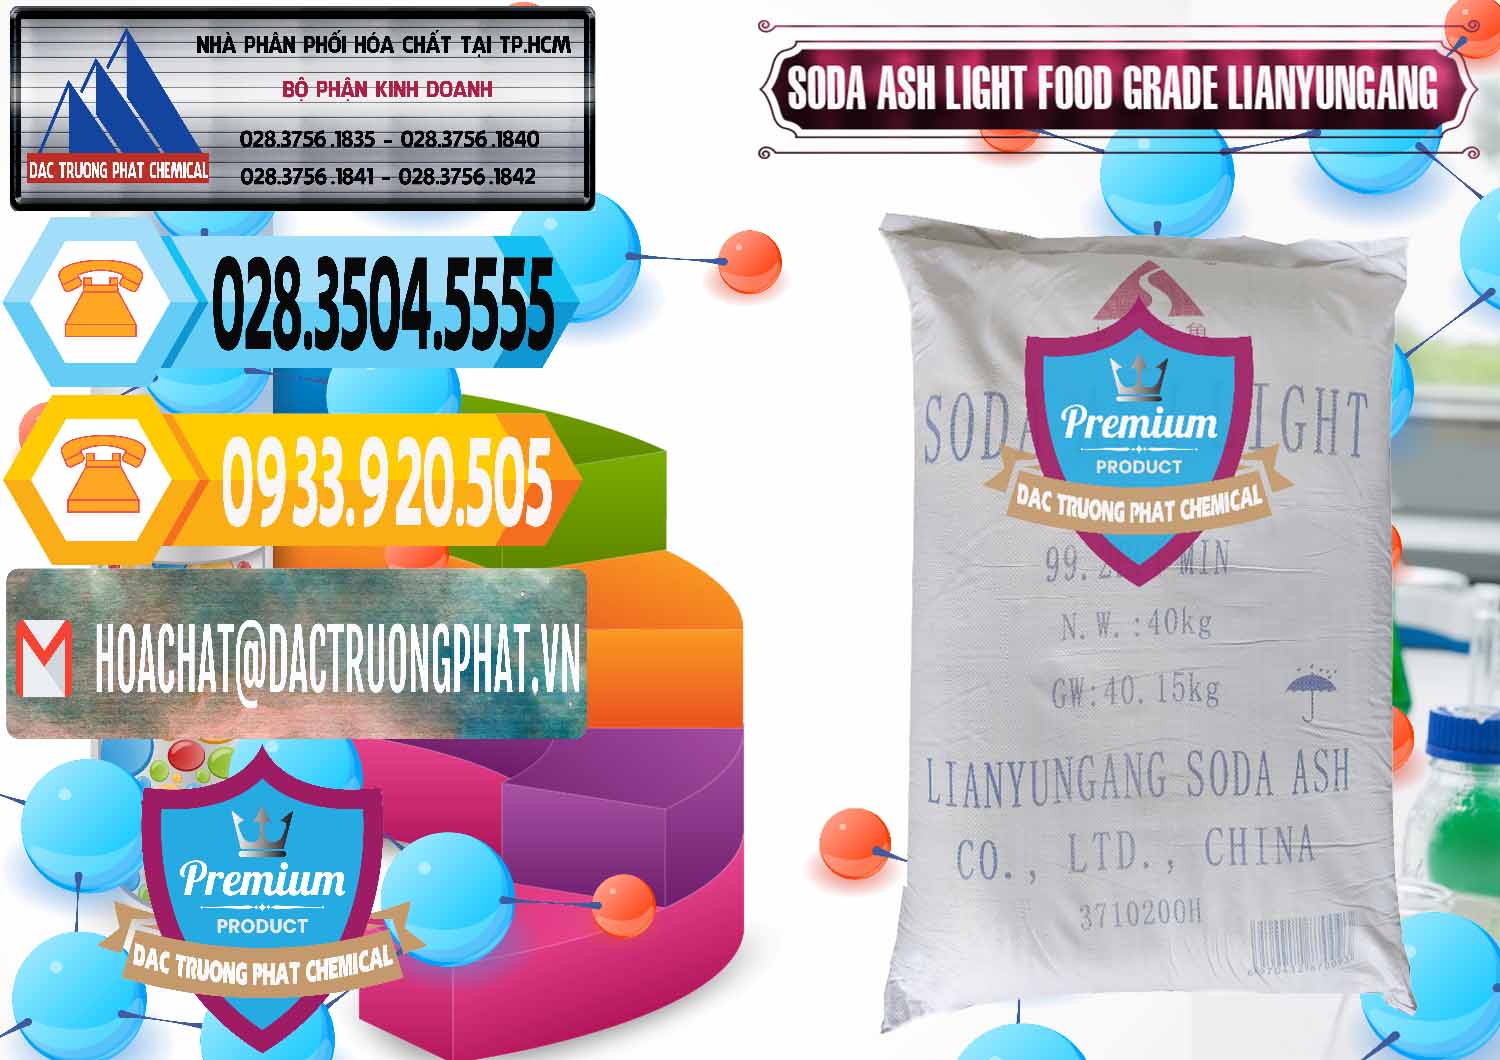 Nơi chuyên phân phối & bán Soda Ash Light - NA2CO3 Food Grade Lianyungang Trung Quốc - 0222 - Cty phân phối _ cung cấp hóa chất tại TP.HCM - hoachattayrua.net